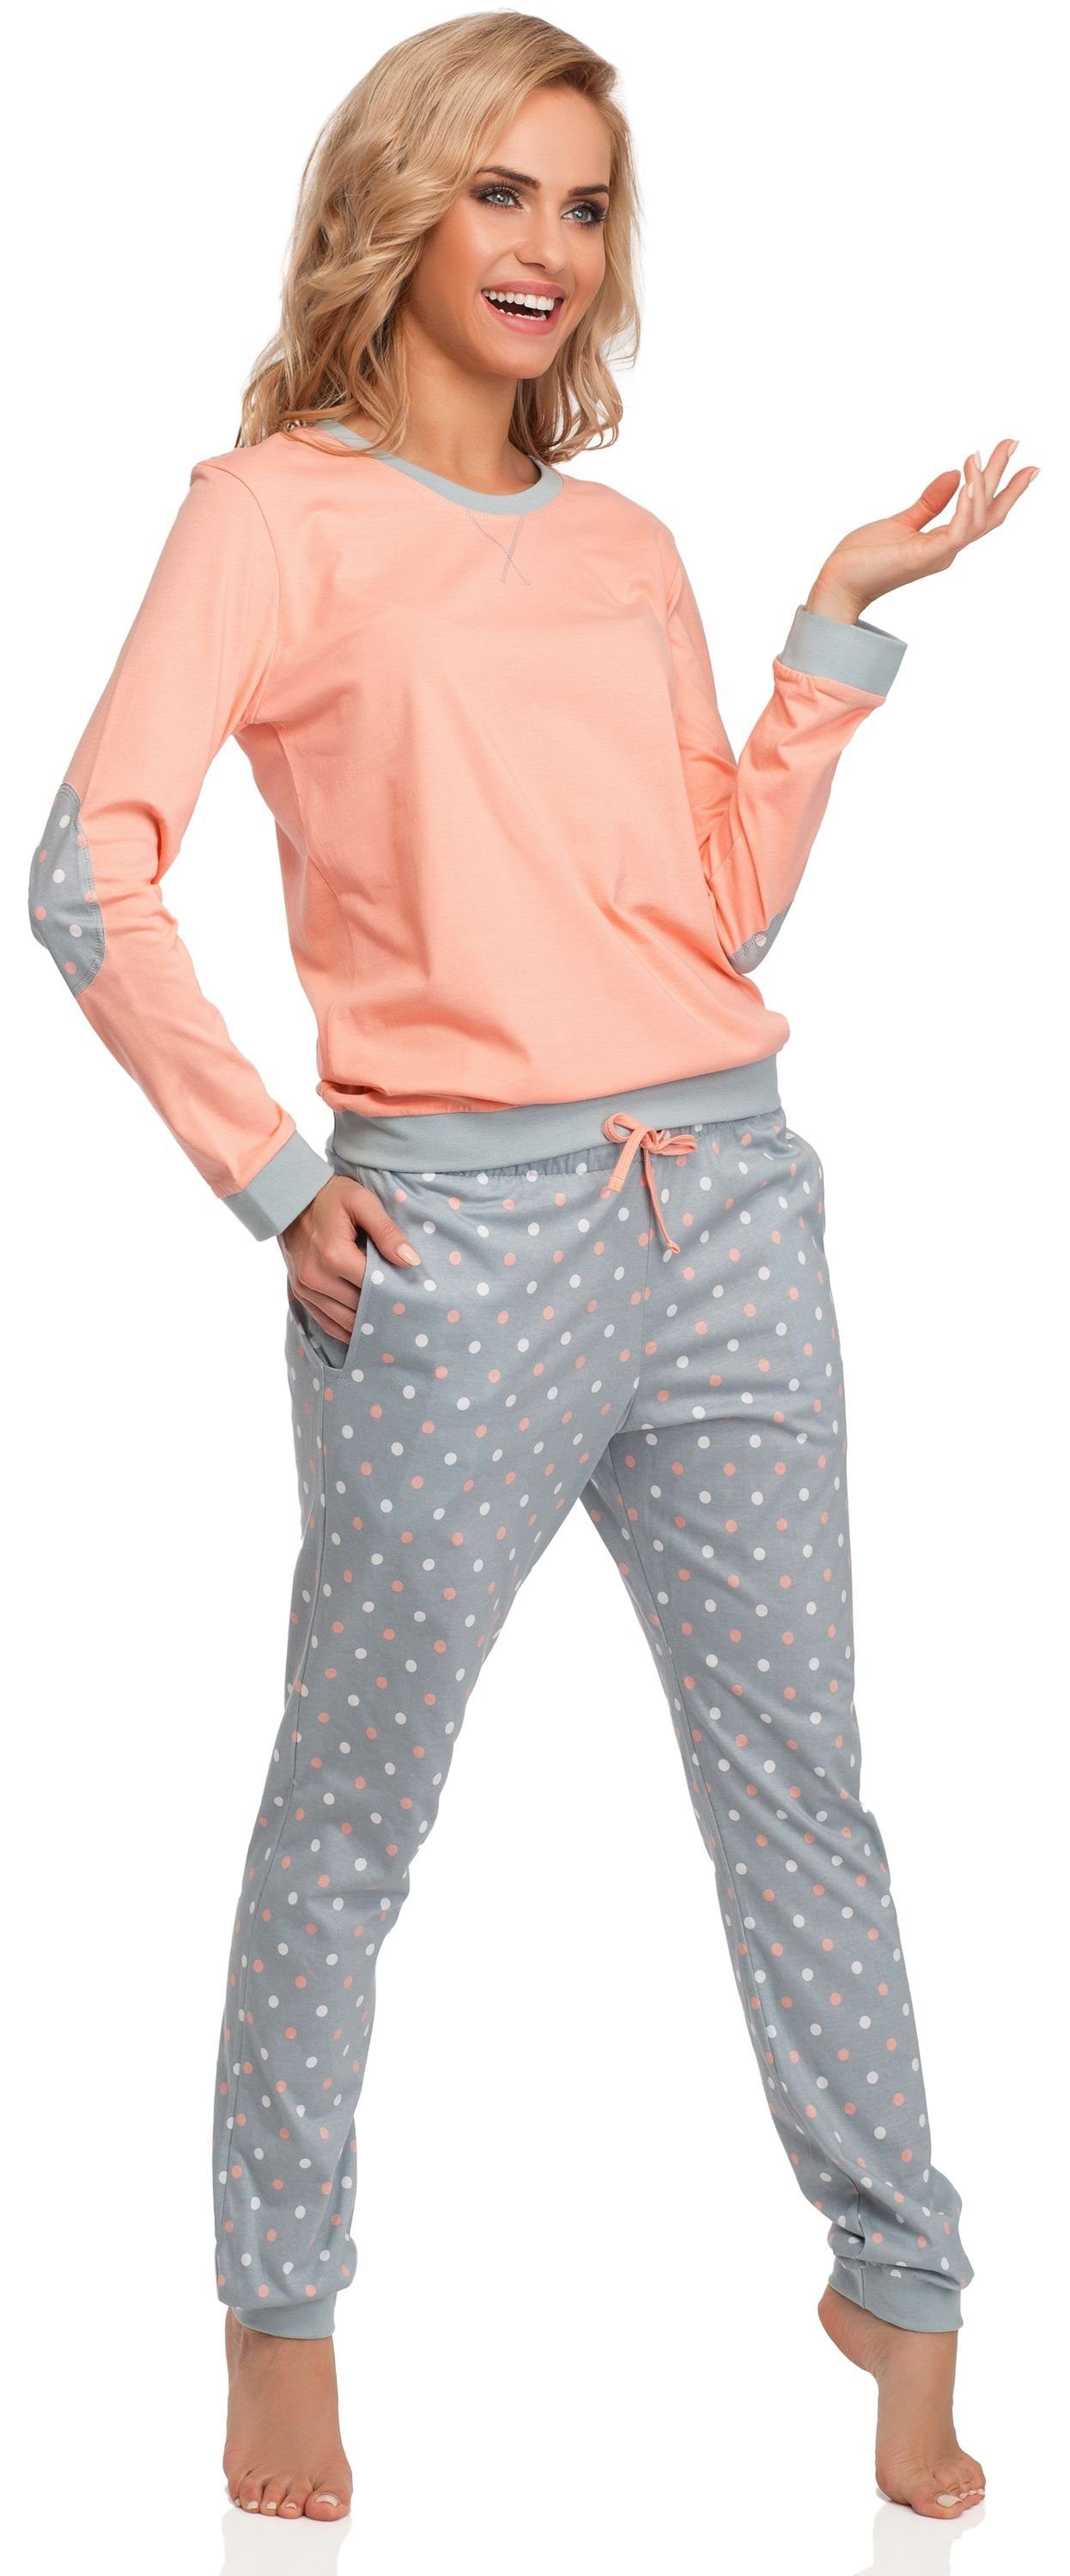 Zweiteiler Lachs/Grau Damen Rundhals mit Schlafanzug Schlafanzug Pyjama Langarm Baumwolle Cornette 634